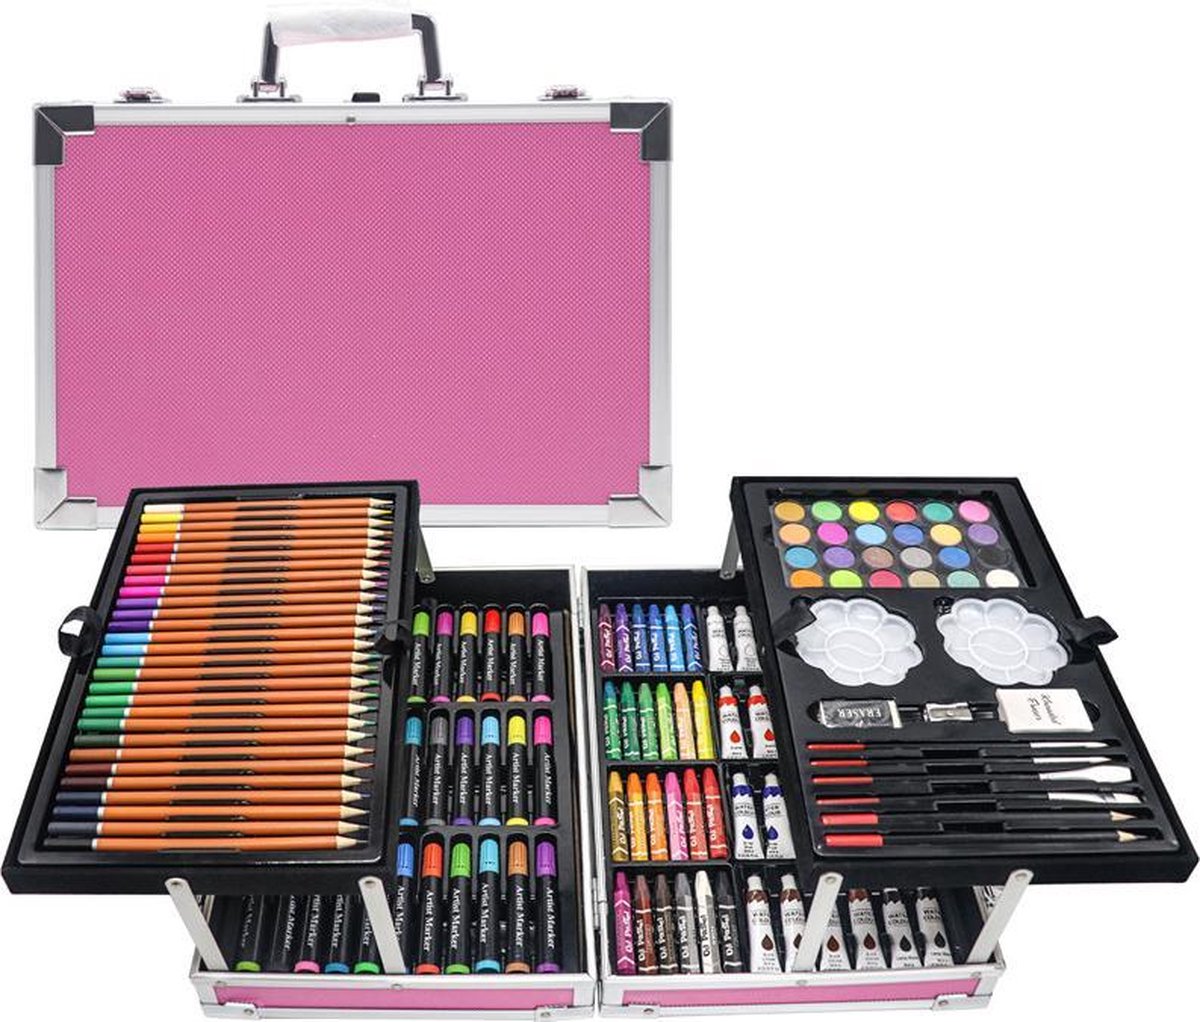 kleurkoffer - tekenkist - 145 stuks - schilder koffer - tekensets - tekendozen - roze - Pro Drawing®